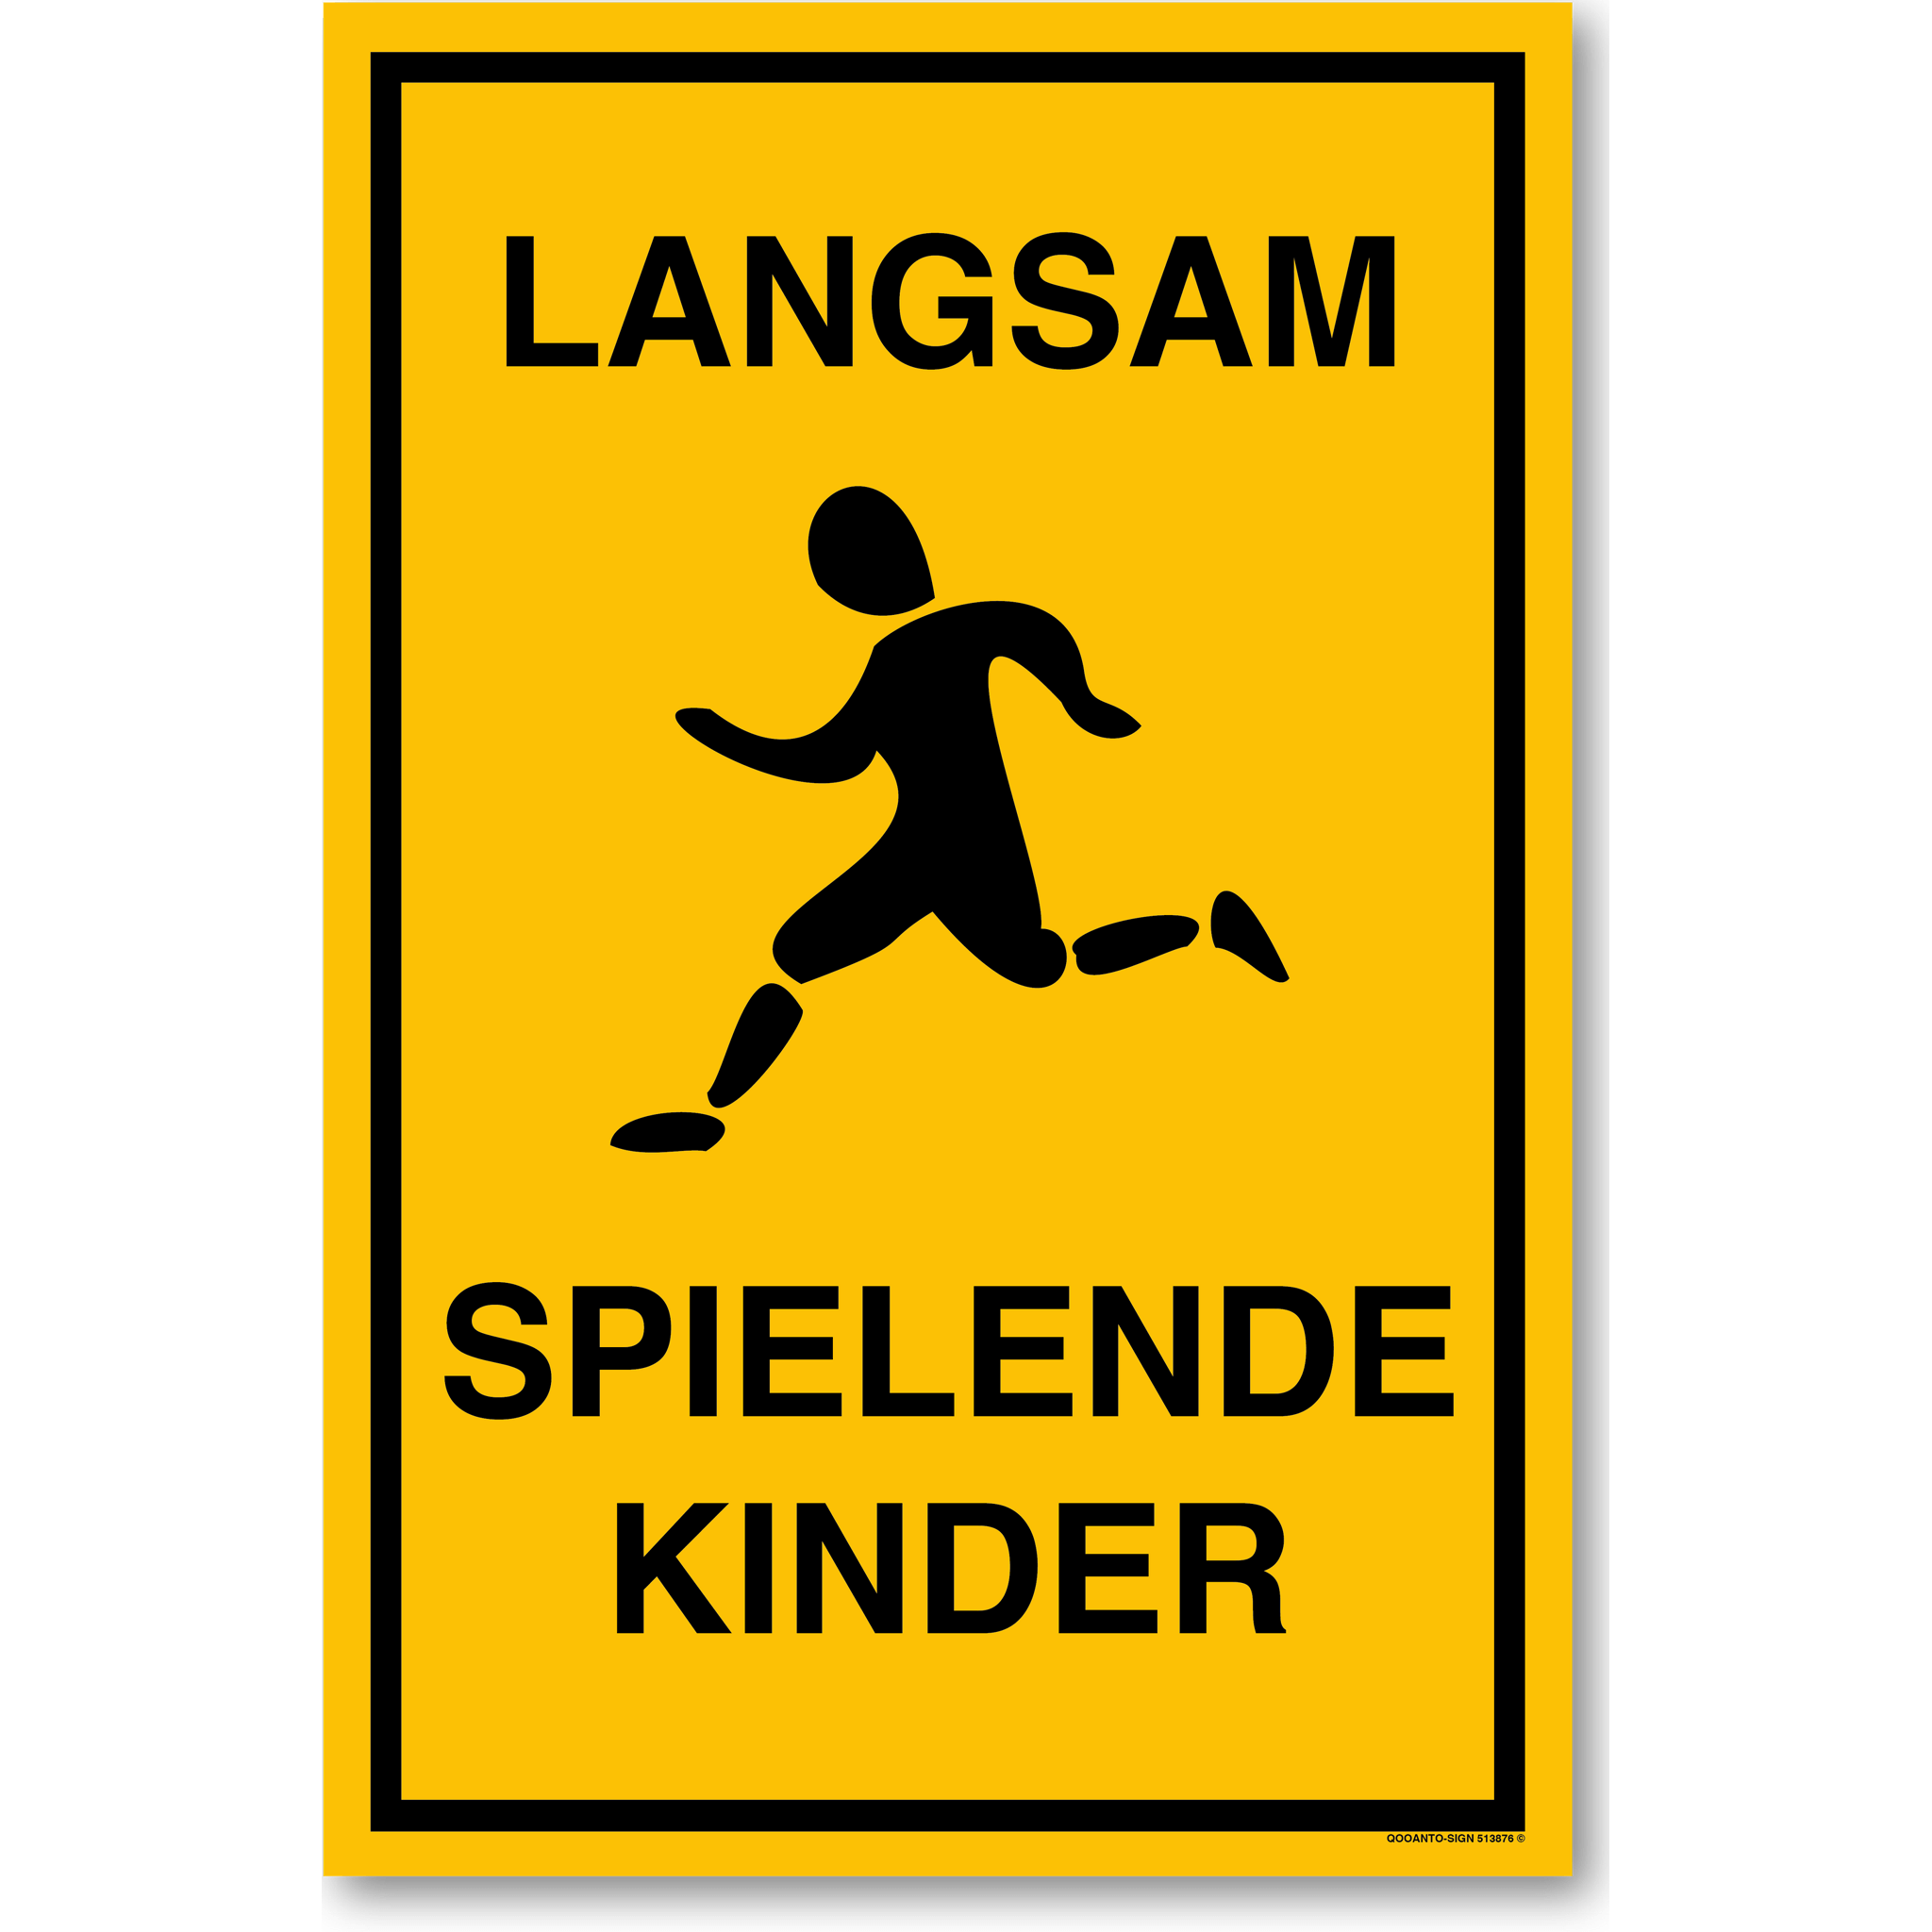 LANGSAM - SPIELENDE KINDER (laufender Junge), Schild oder Aufkleber